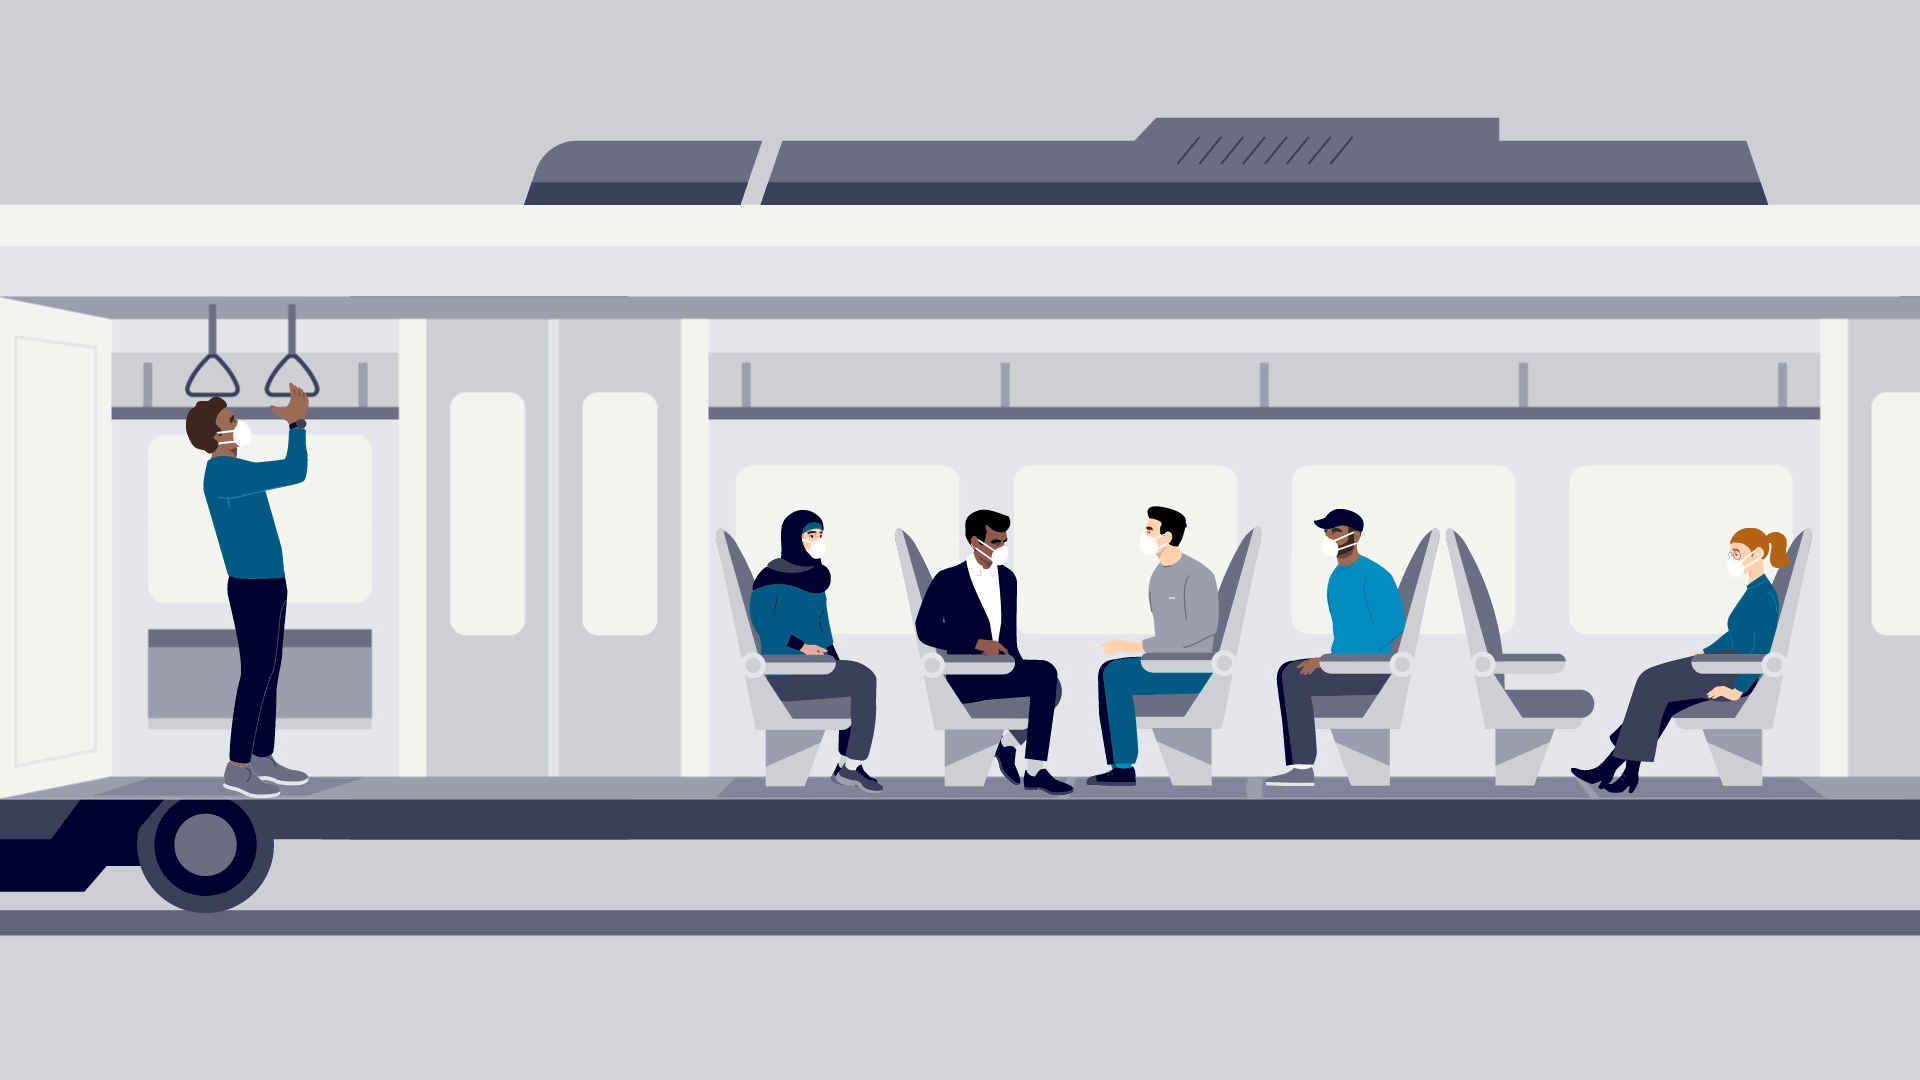 Eine kurze animierte Infografik zeigt, wie das Tragen von Masken zur Minimierung des Infektionsrisikos an Bord von öffentlichen Verkehrsmitteln beiträgt.